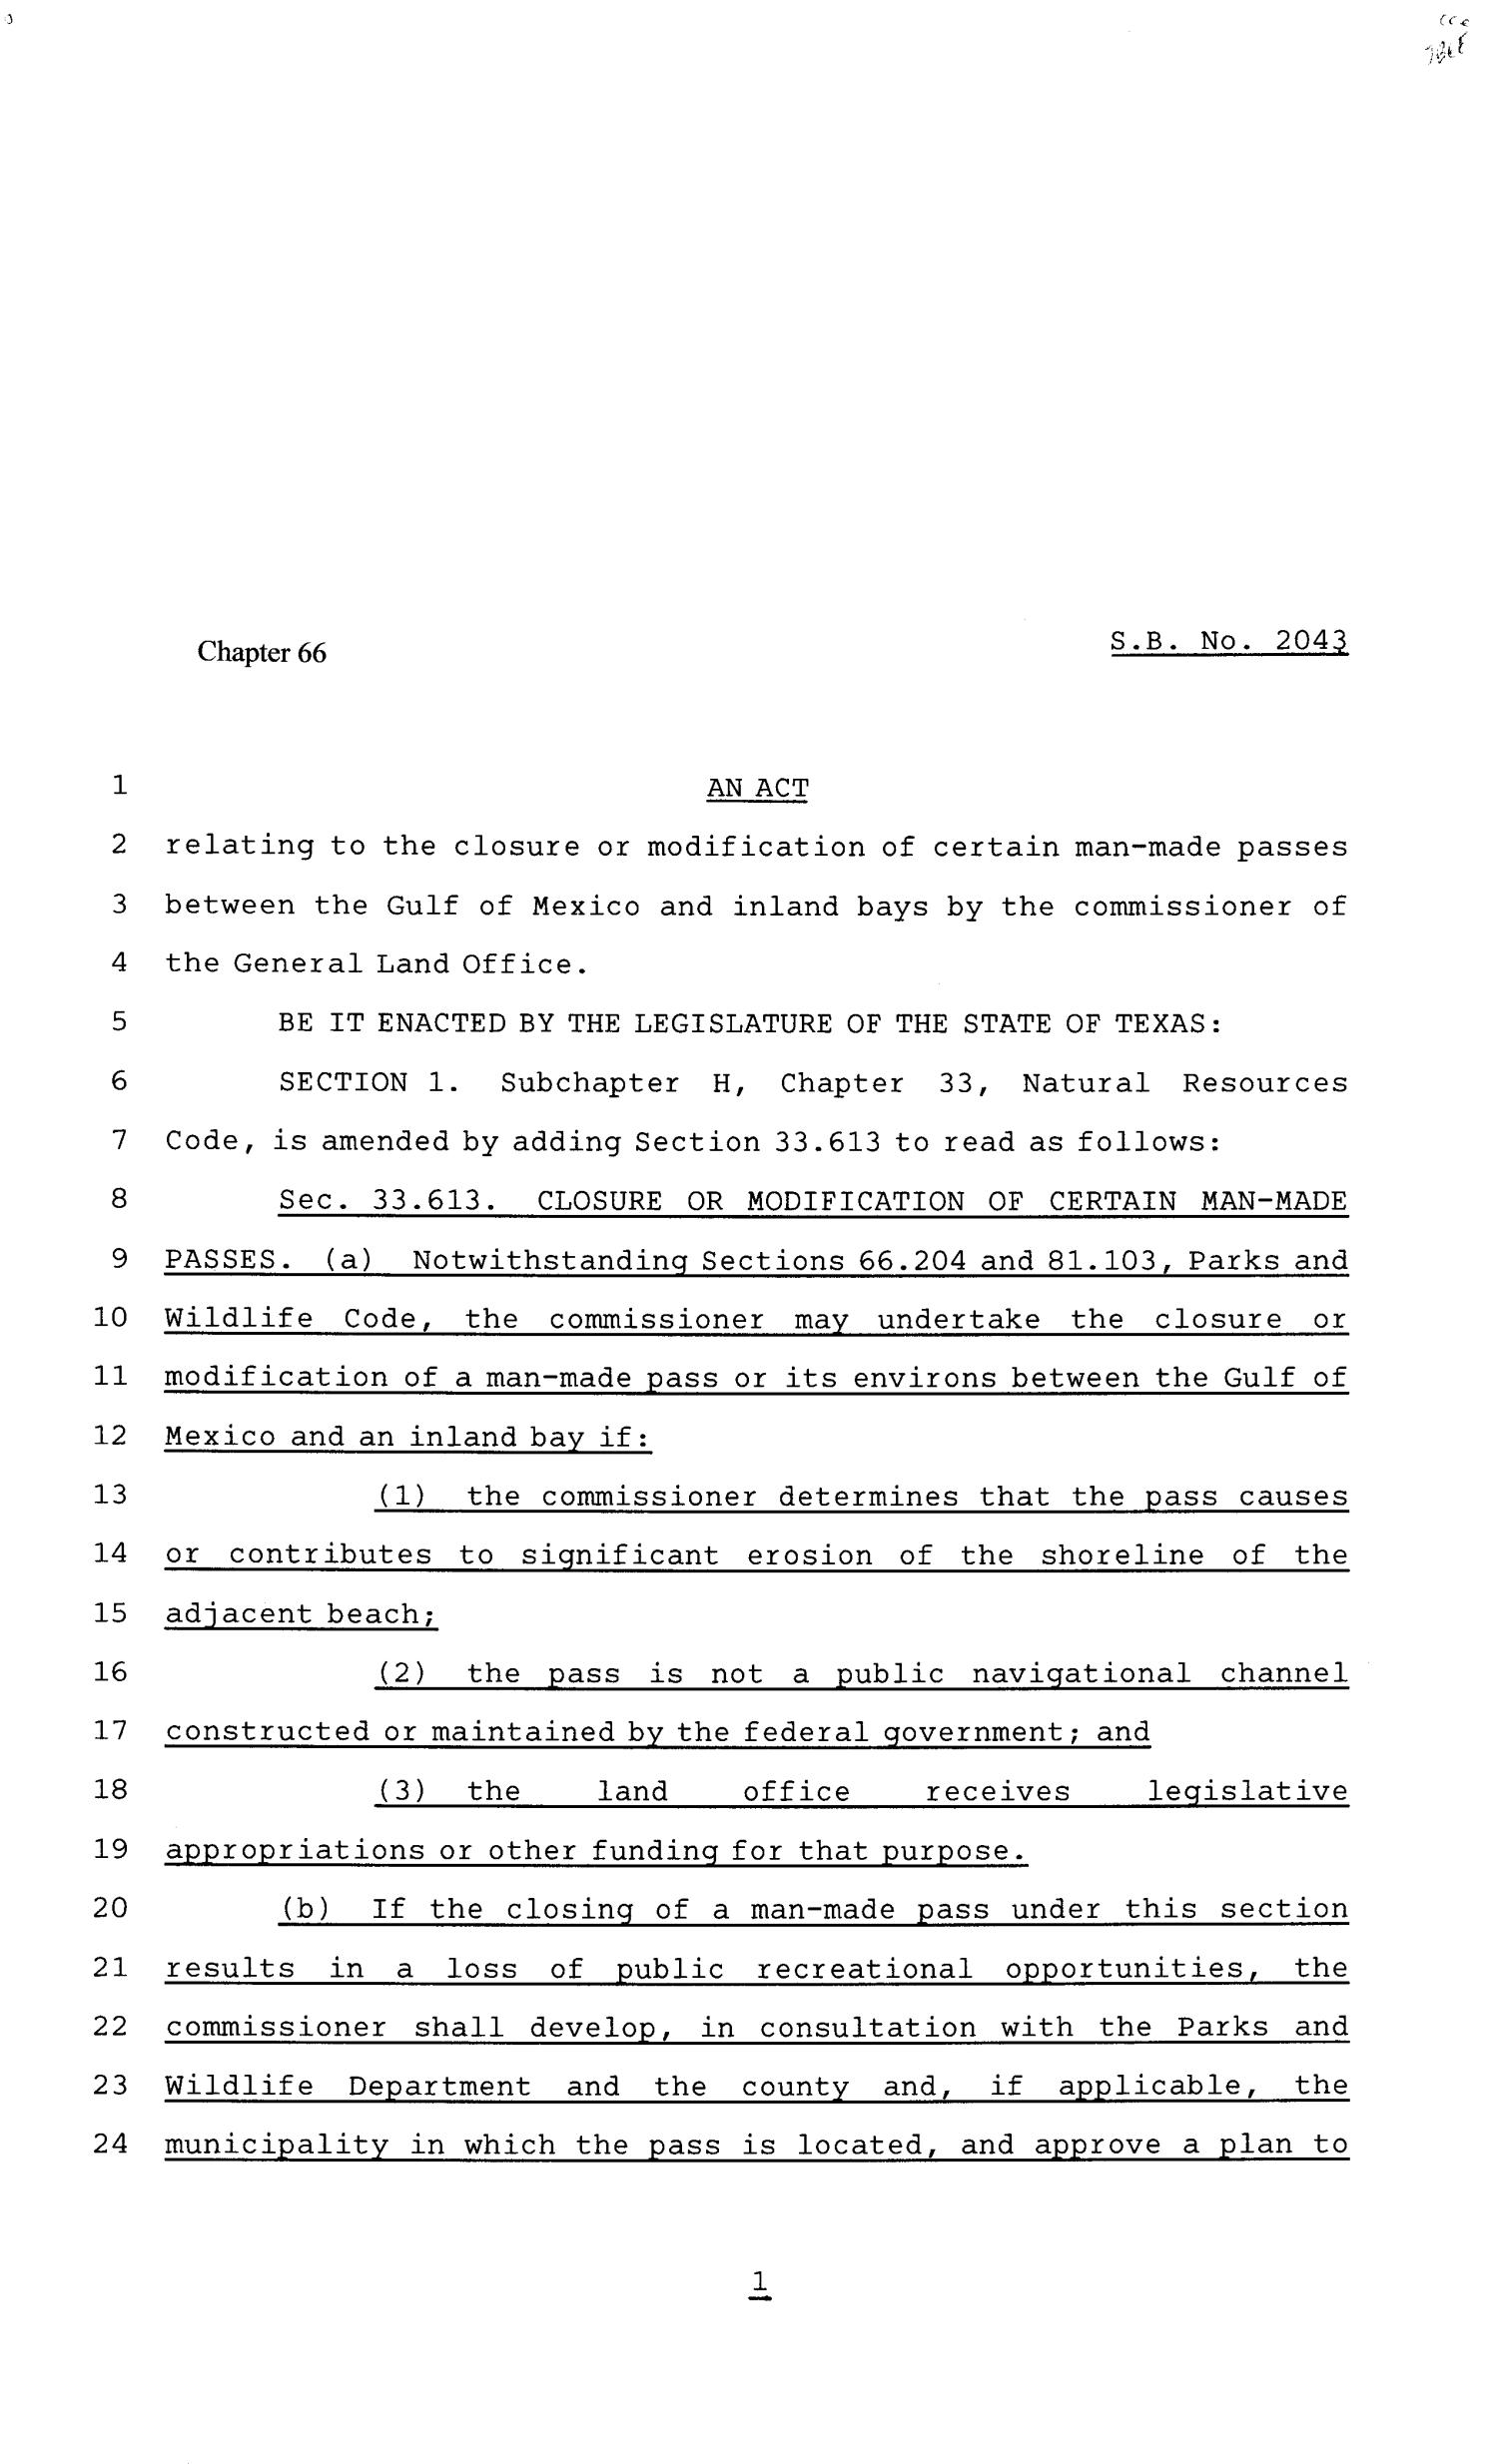 81st Texas Legislature, Senate Bill 2043, Chapter 66
                                                
                                                    [Sequence #]: 1 of 3
                                                